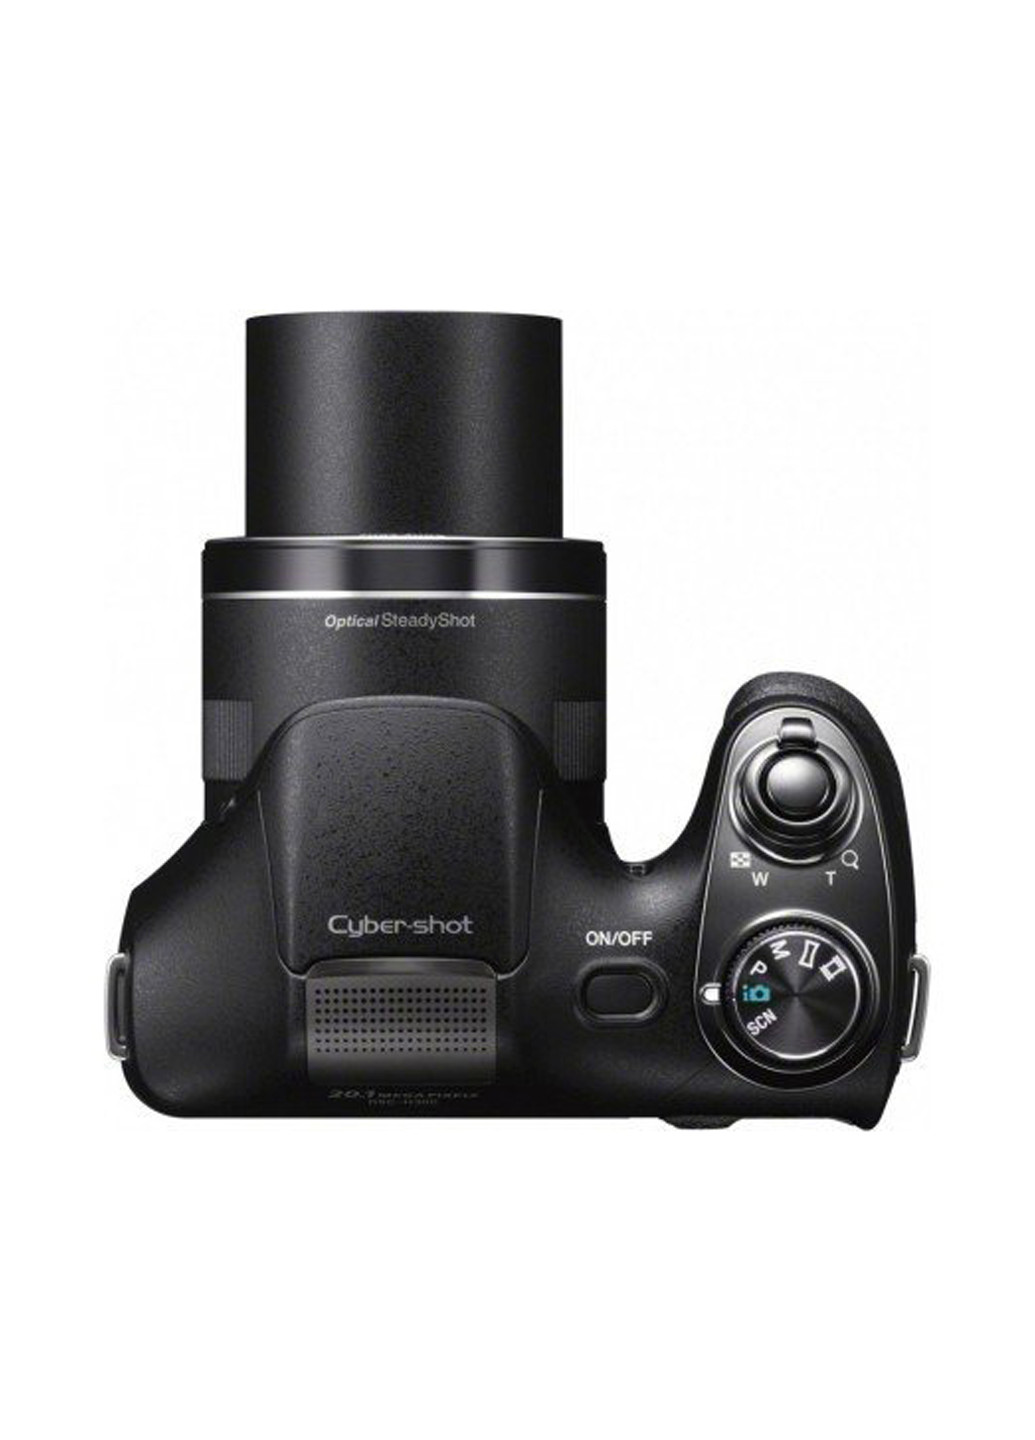 Компактная фотокамера Sony cyber-shot h300 black (132999720)